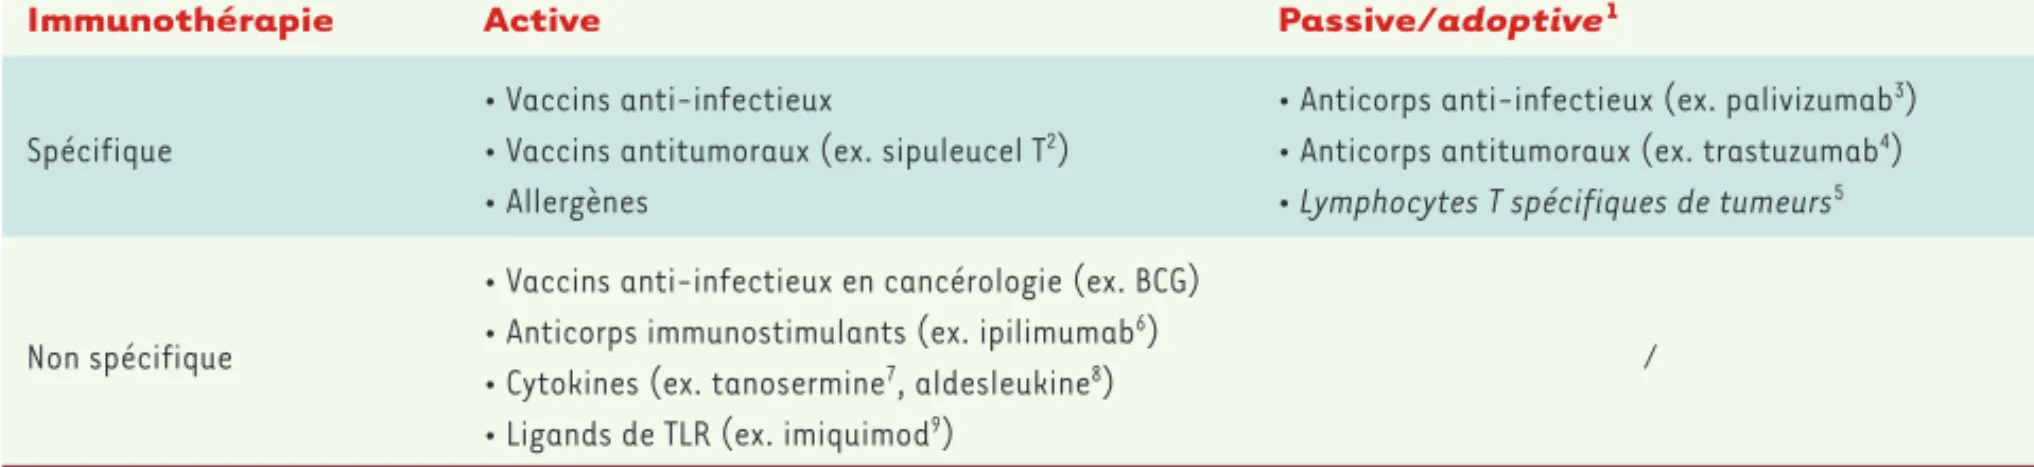 Tableau I. Classification des différents types d’immunothérapie.